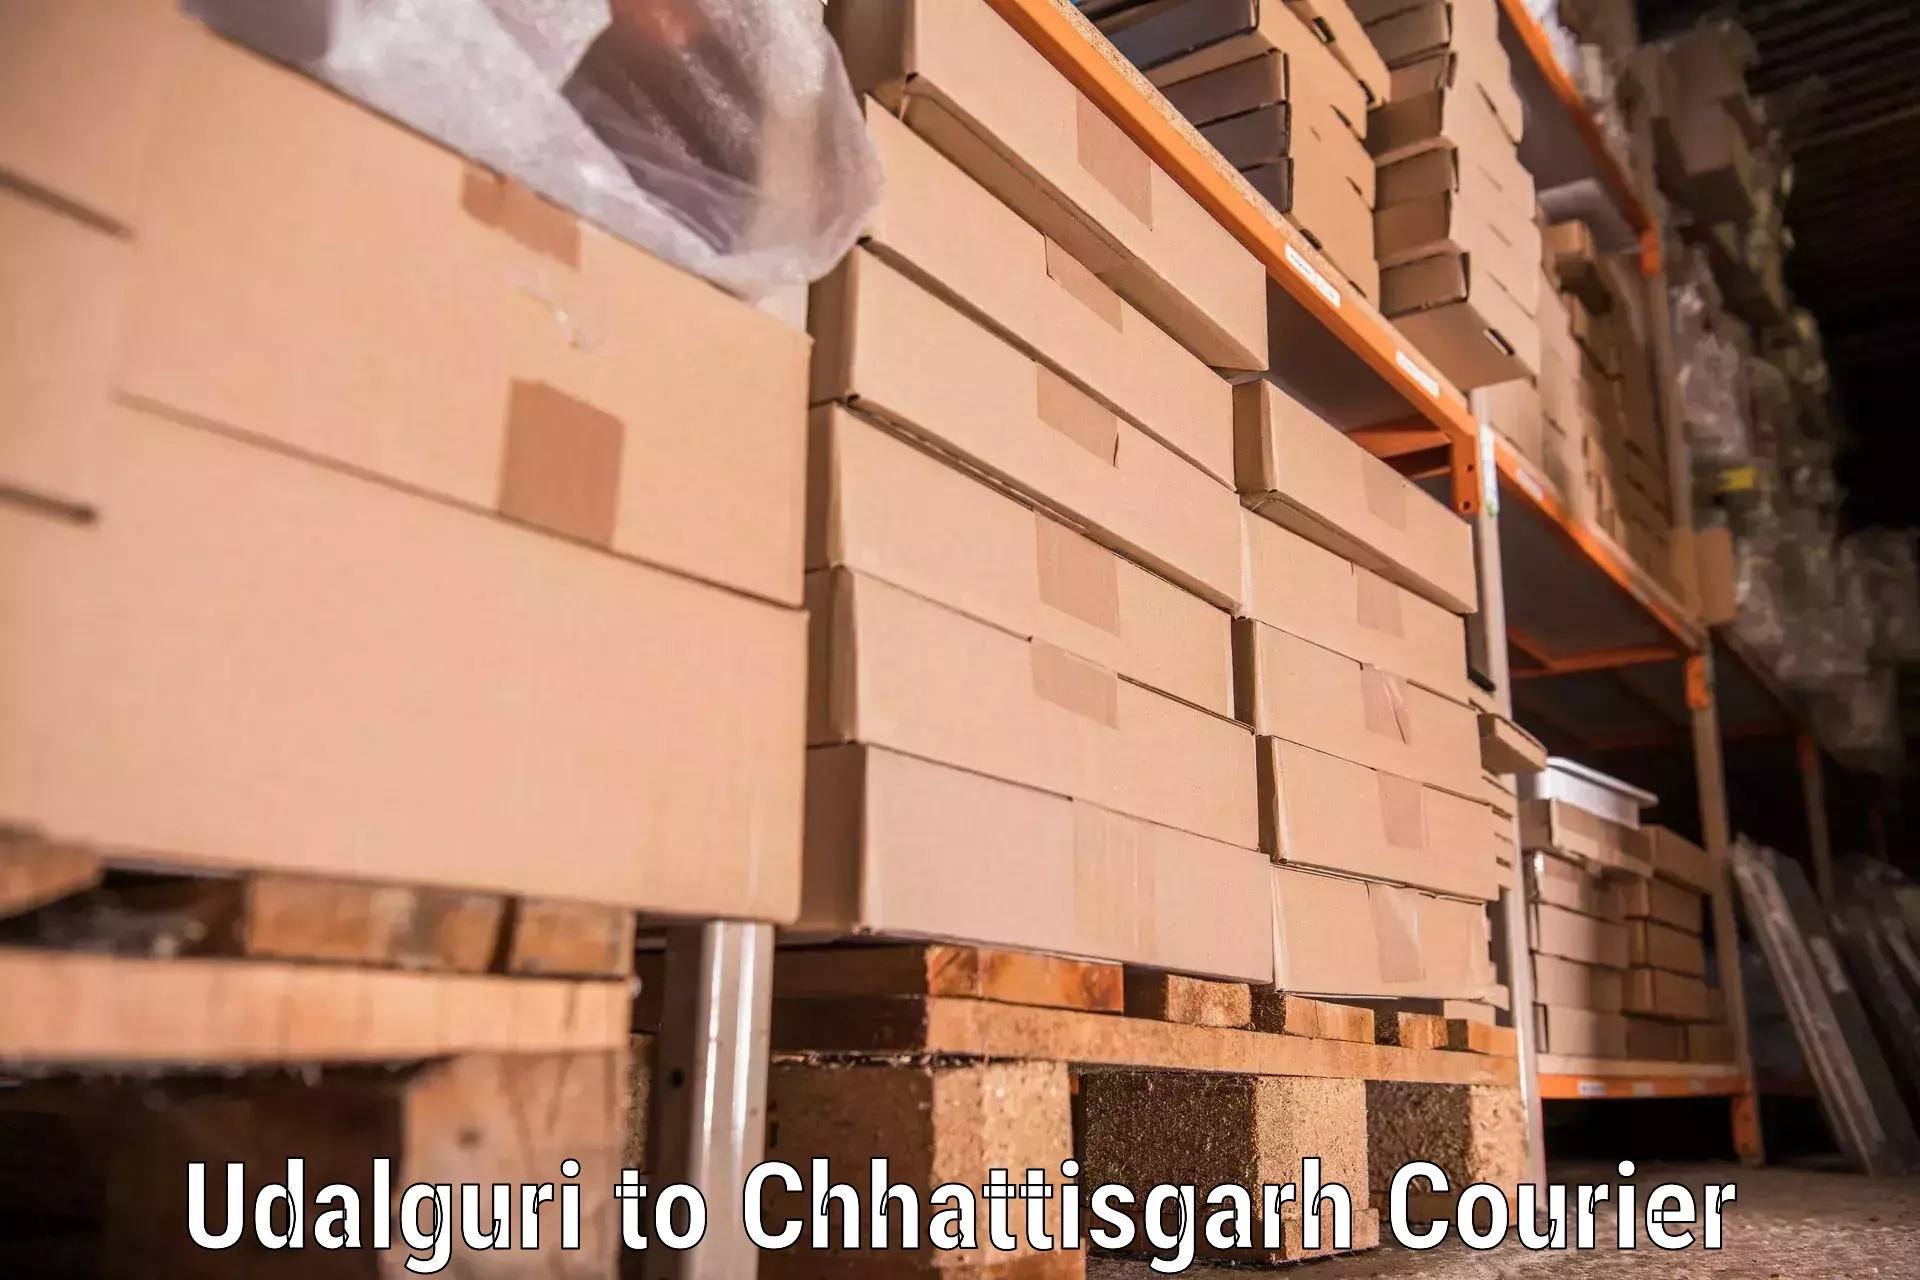 Furniture moving service Udalguri to Chhattisgarh